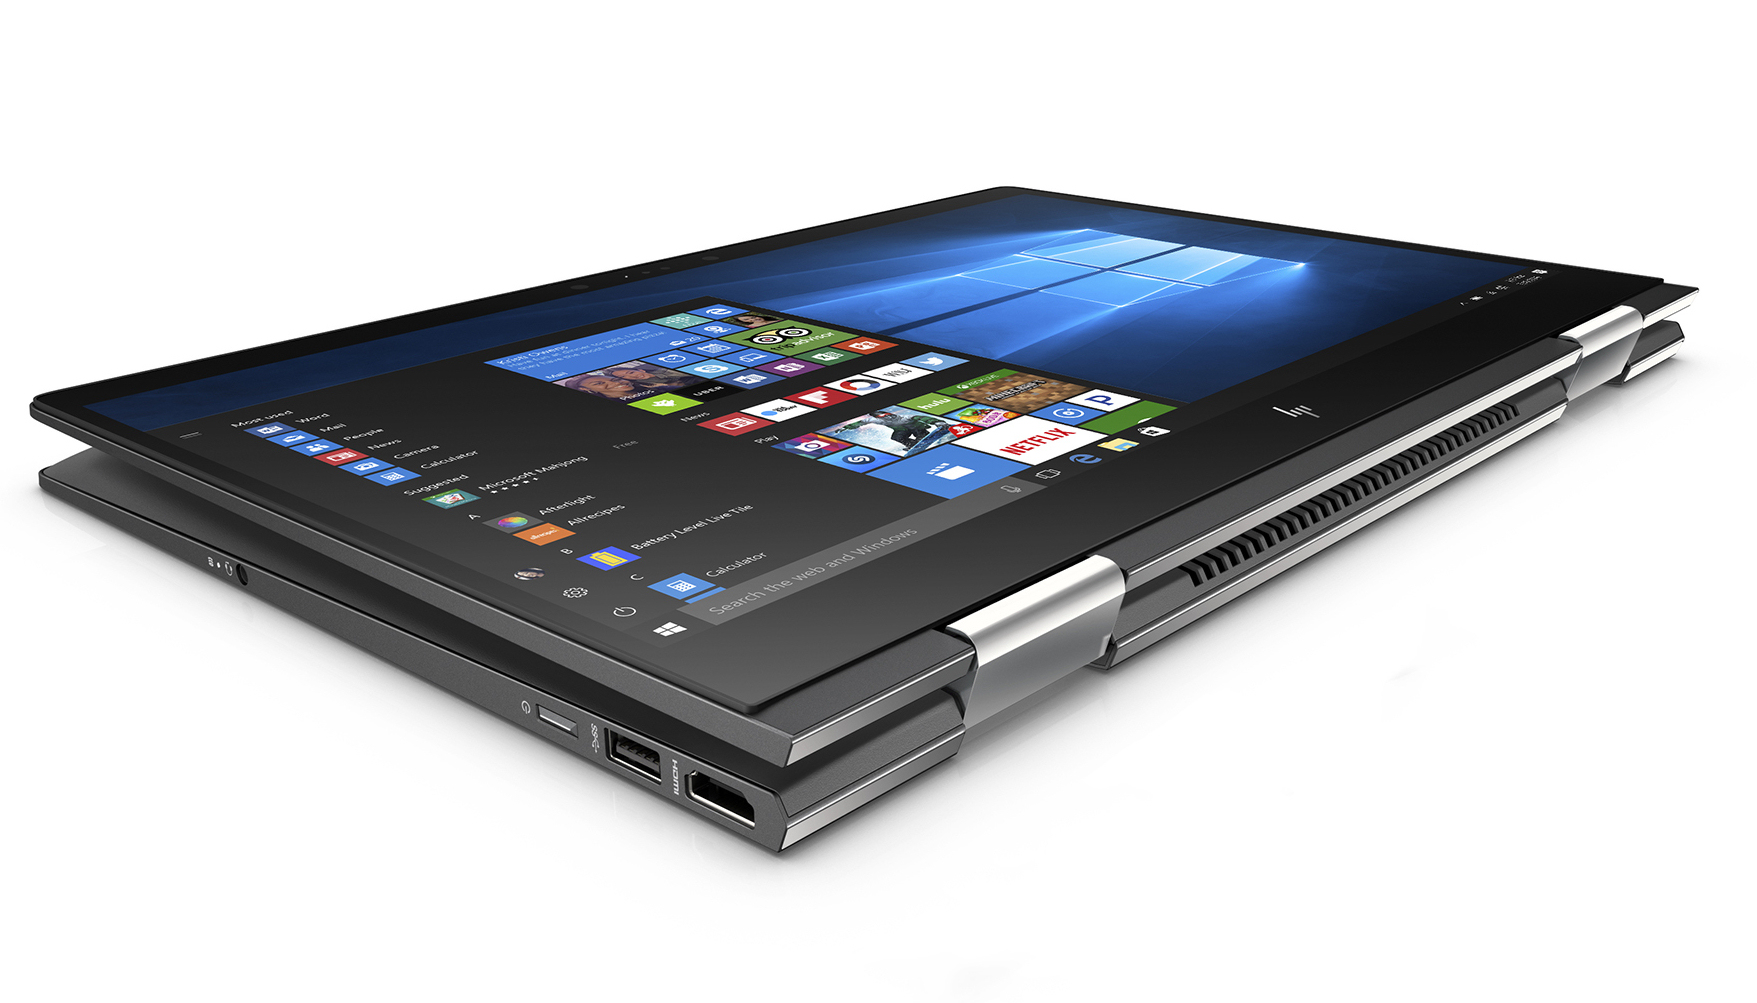 HP Envy x360 15z (Ryzen 5 2500U, Vega 8, SSD, FHD) Convertible Review -  NotebookCheck.net Reviews